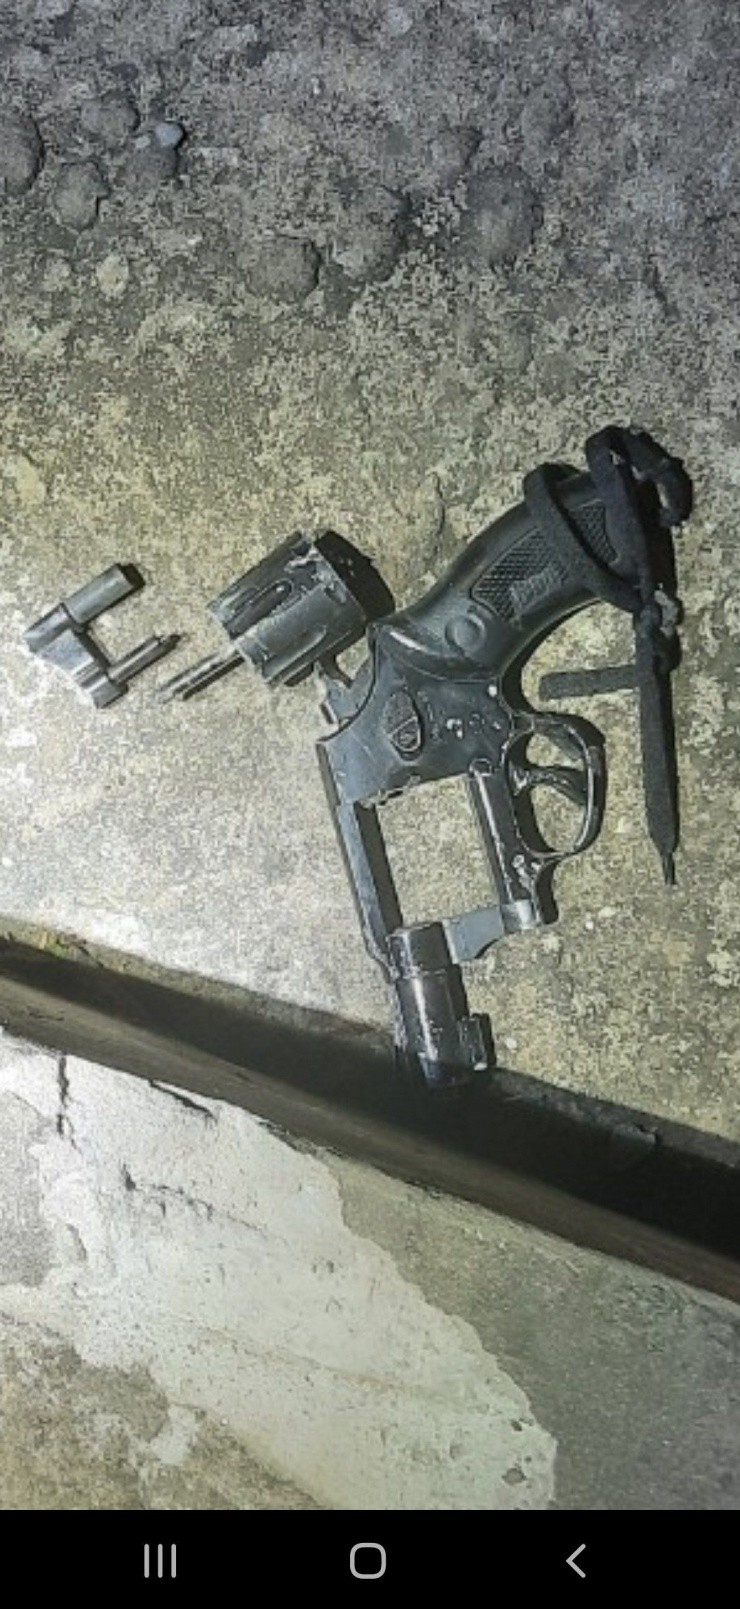 Vụ dùng súng cướp tiệm vàng ở Trà Vinh: 